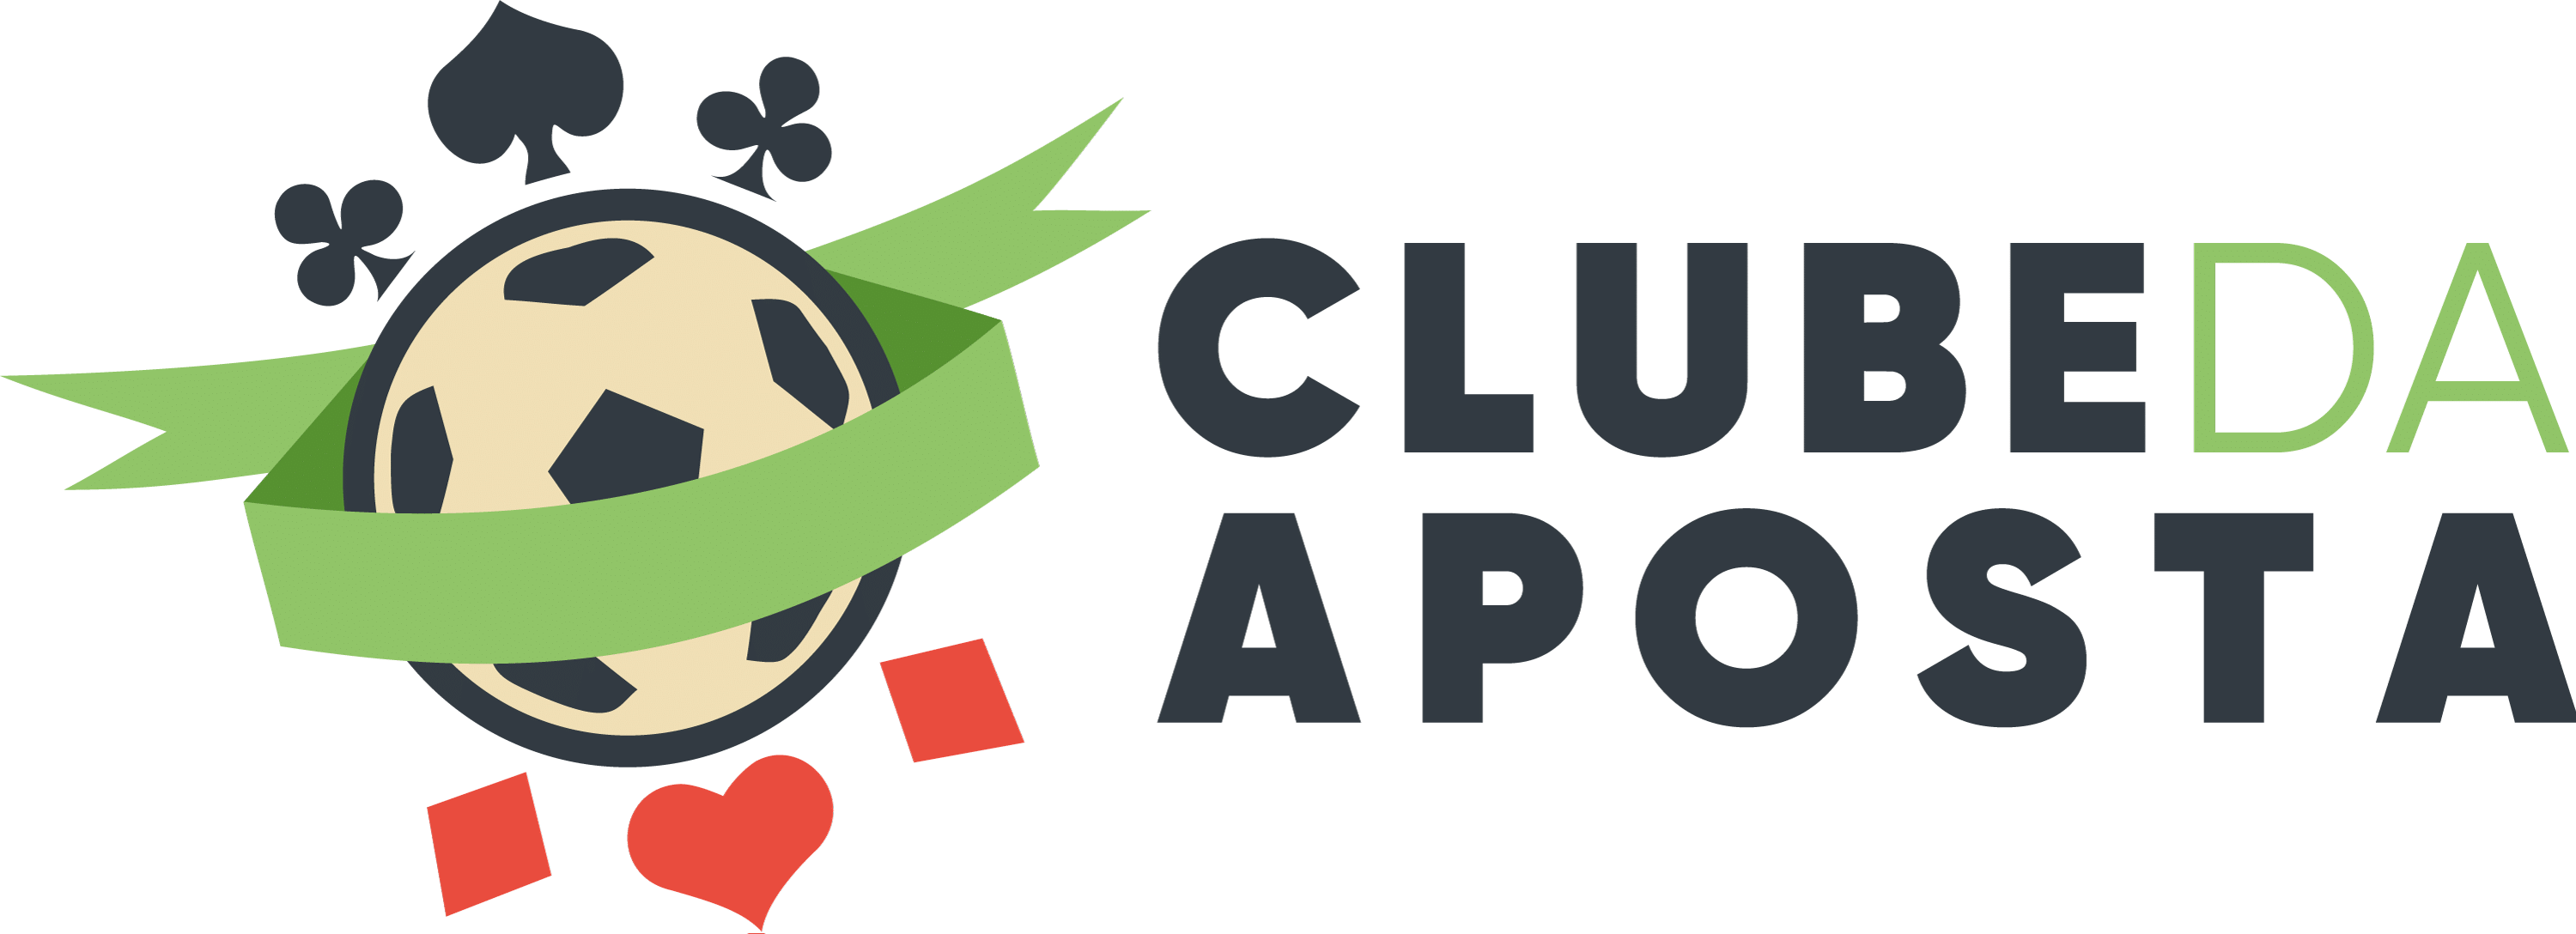 Clube da Aposta: Comunidade de apostas esportivas brasileira